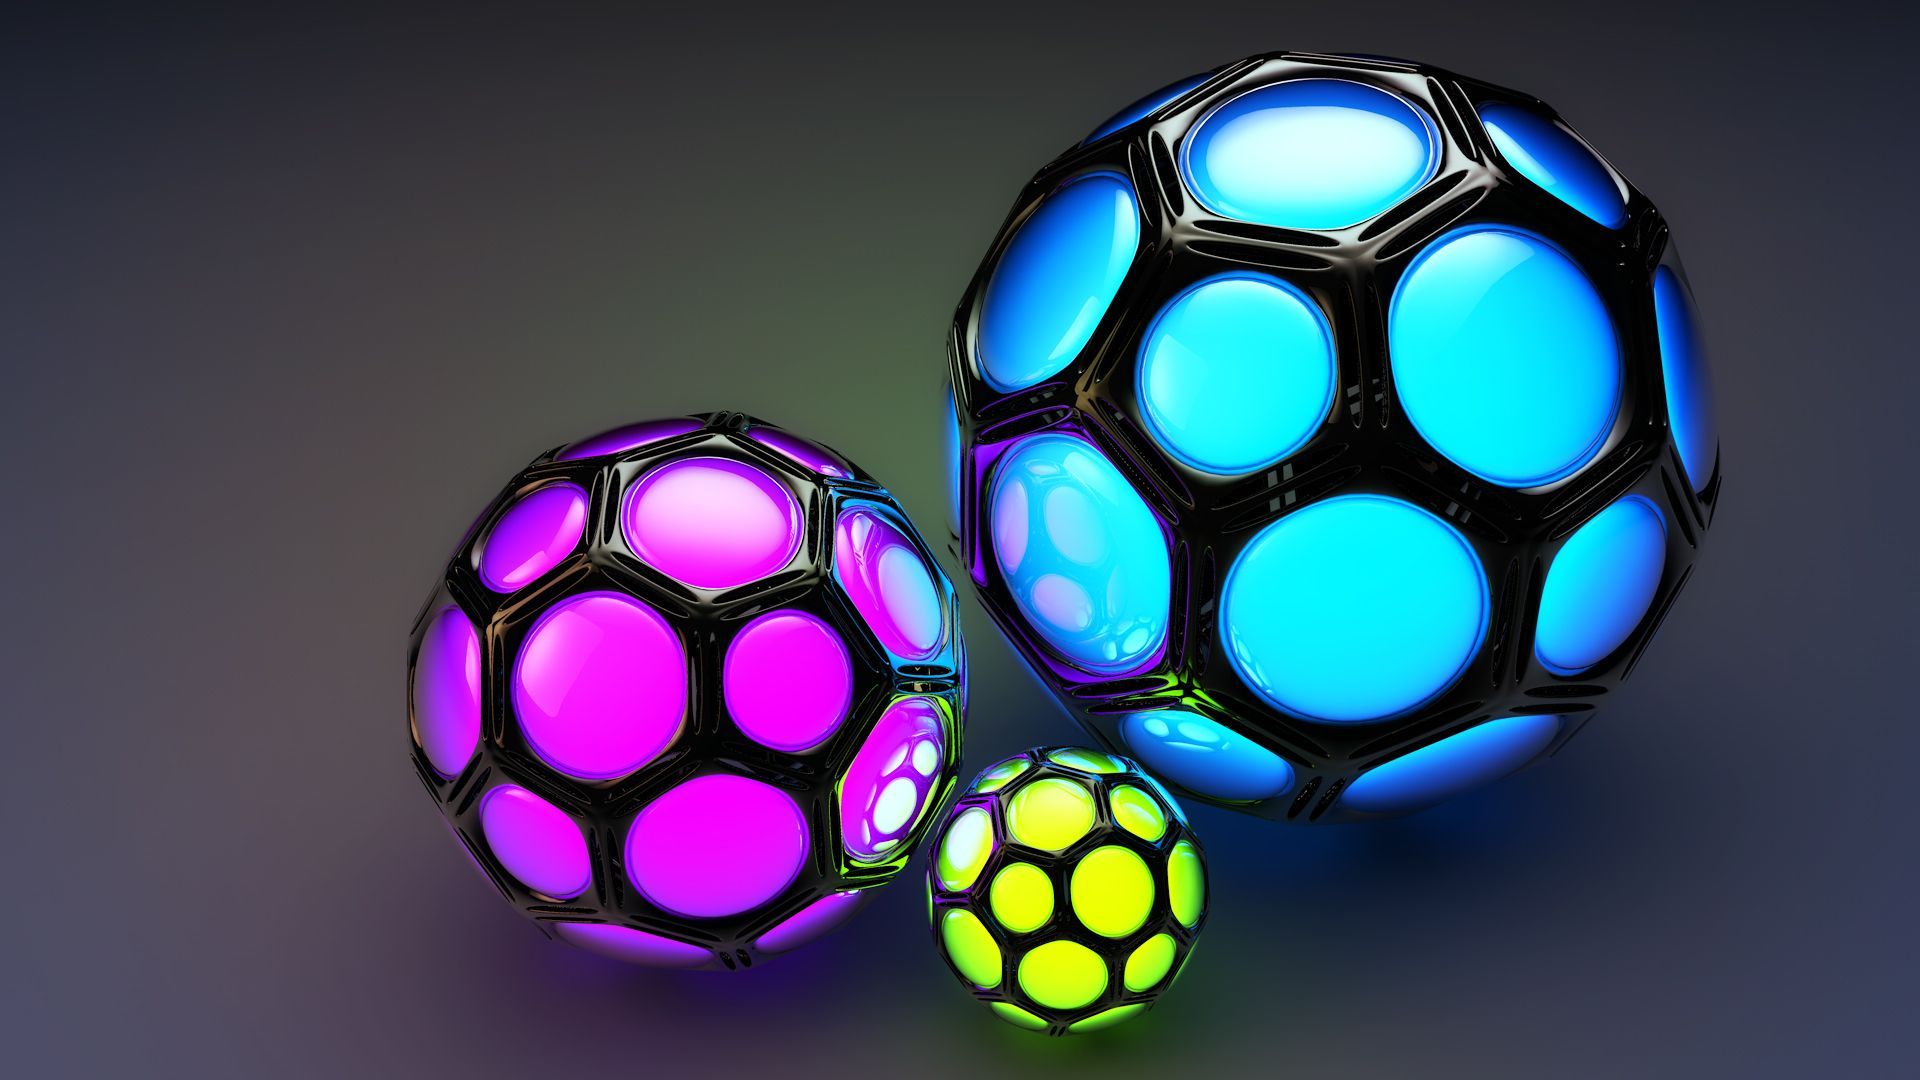 Abstract 3D Cinema Balls. Abstract Desktop HD Wallpaper. Ball